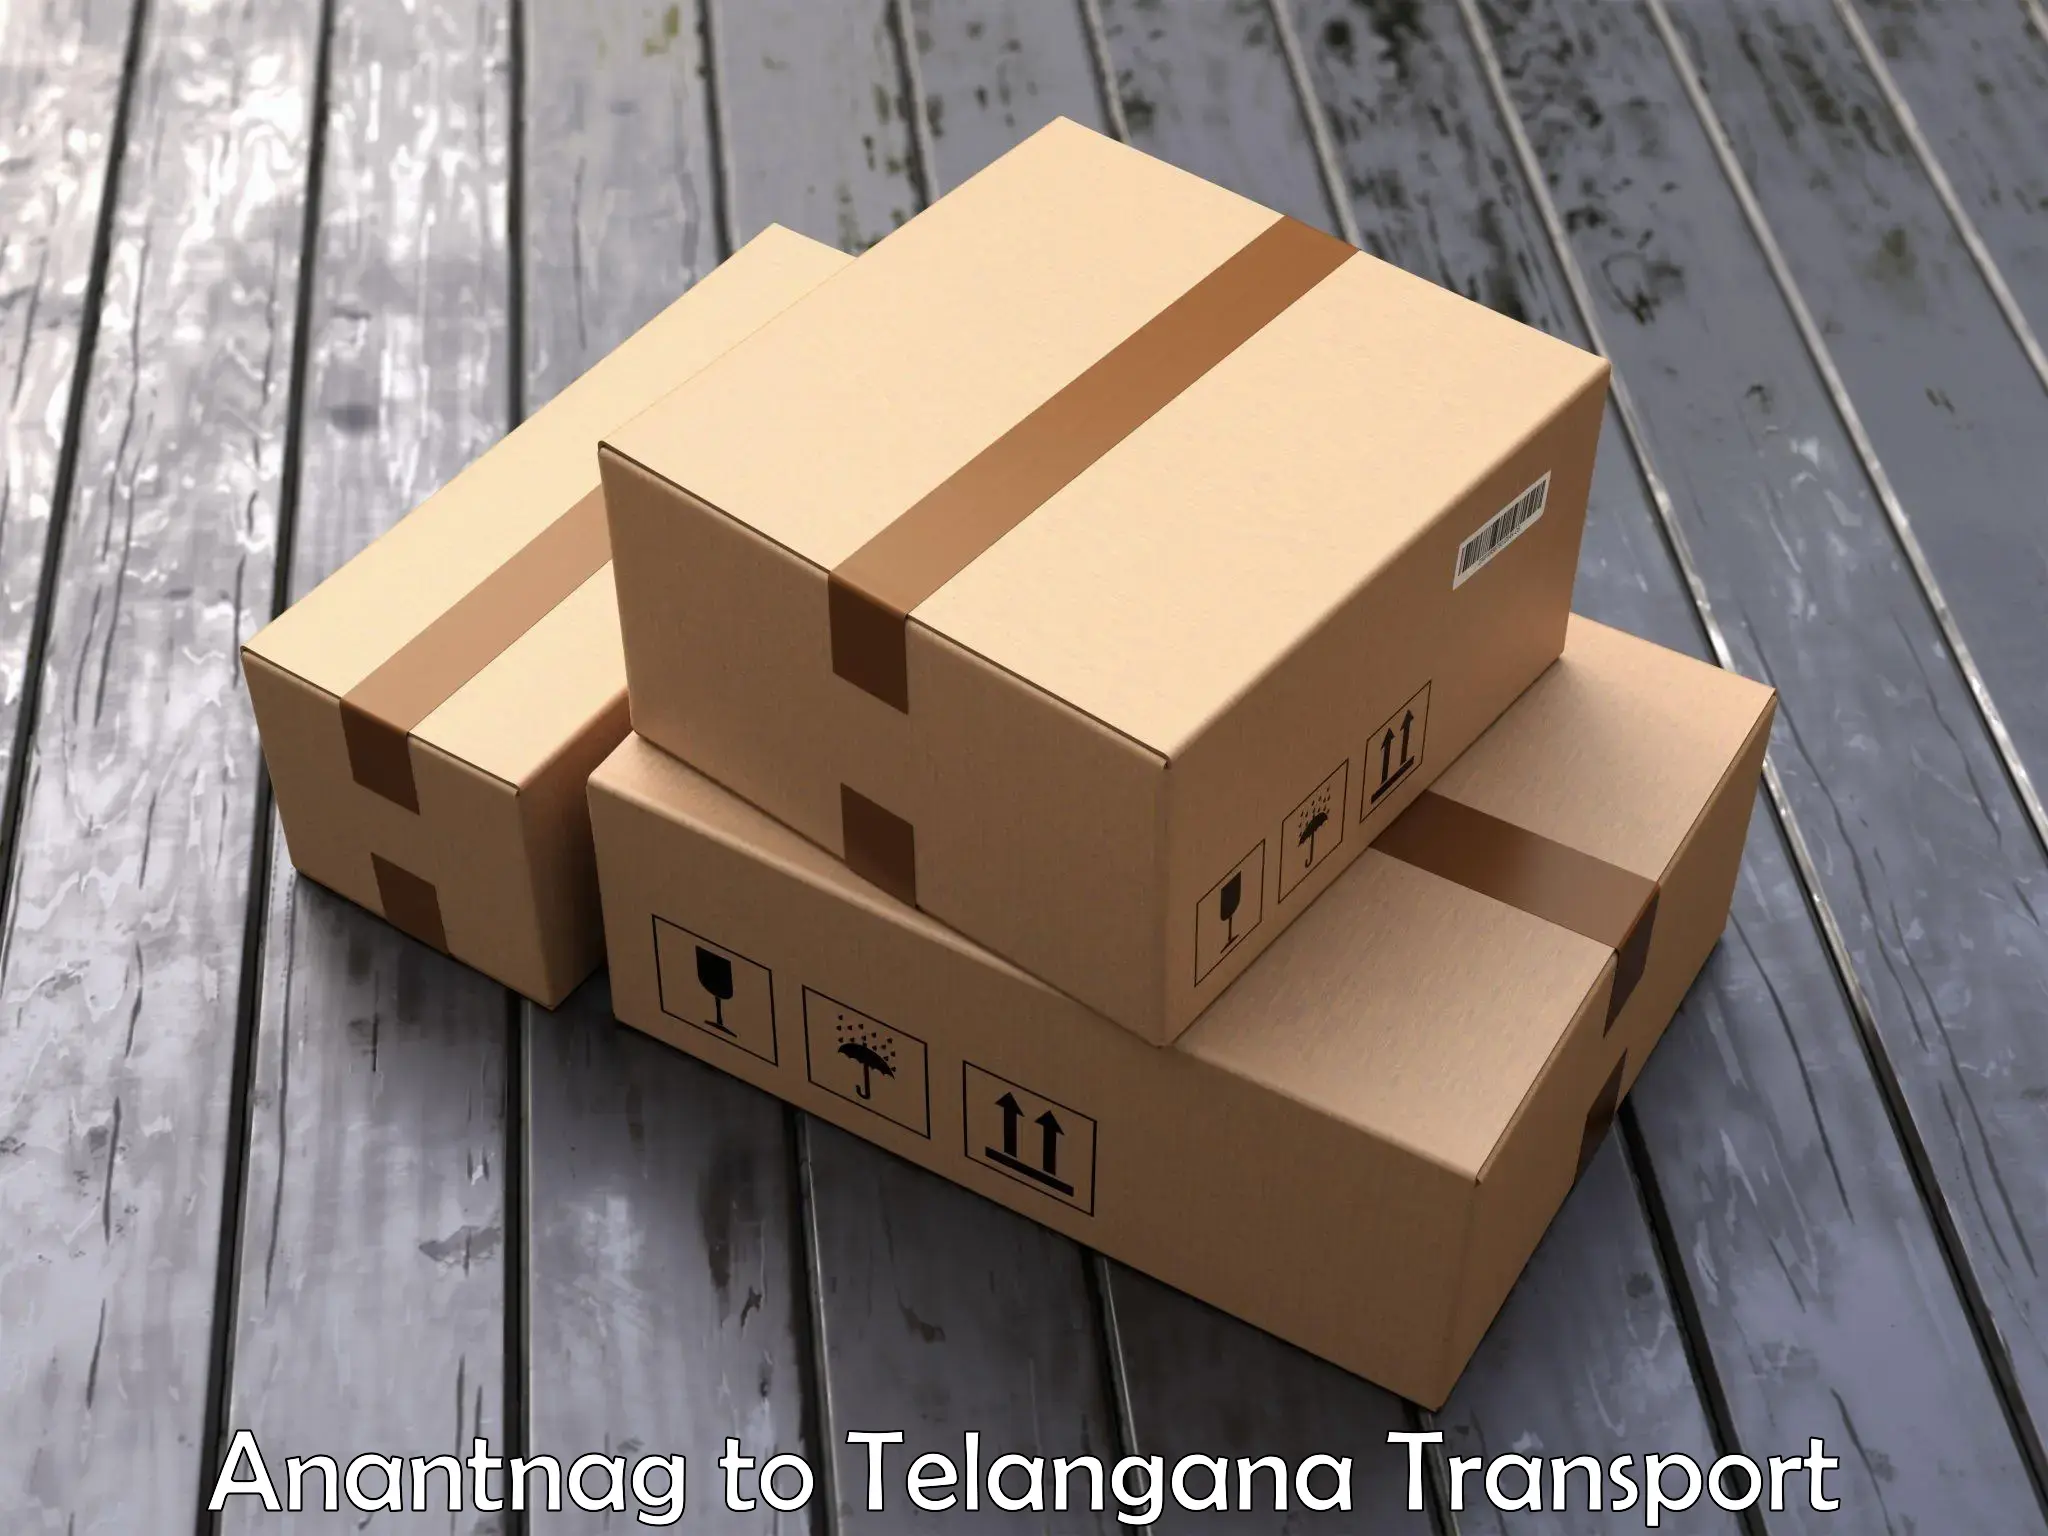 Furniture transport service Anantnag to Cherla